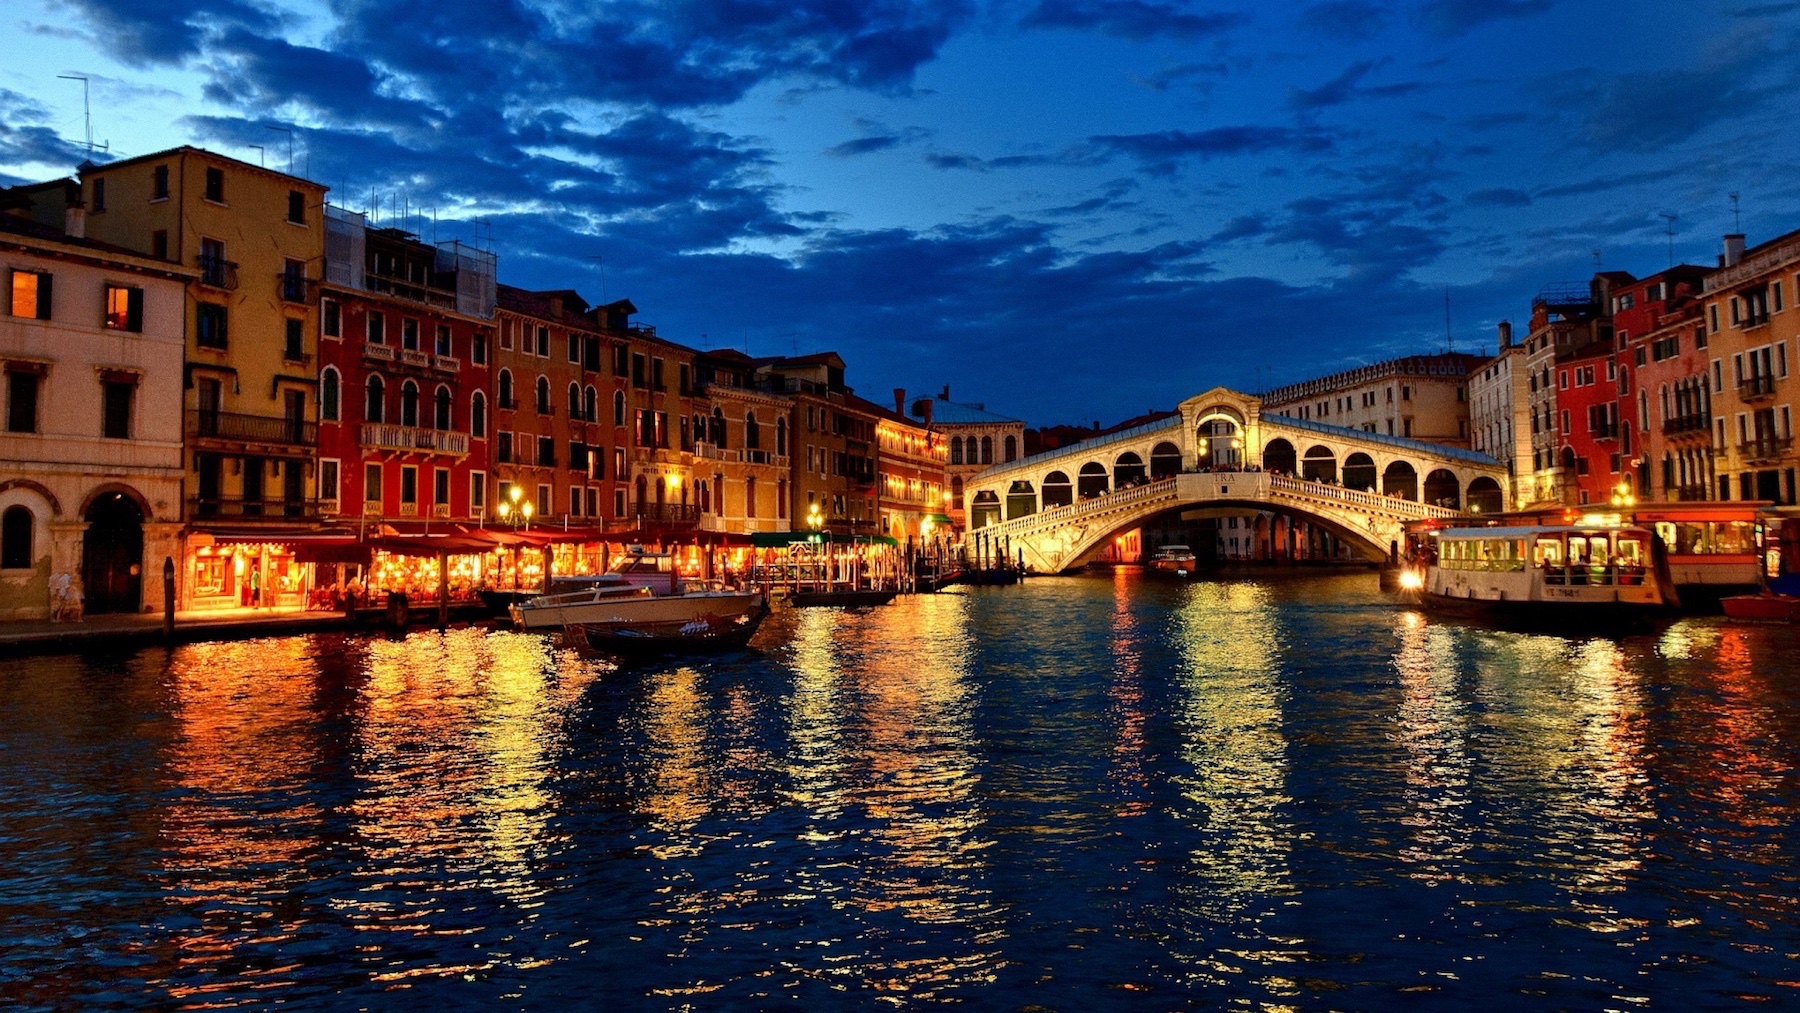 Venice, Italy at Night